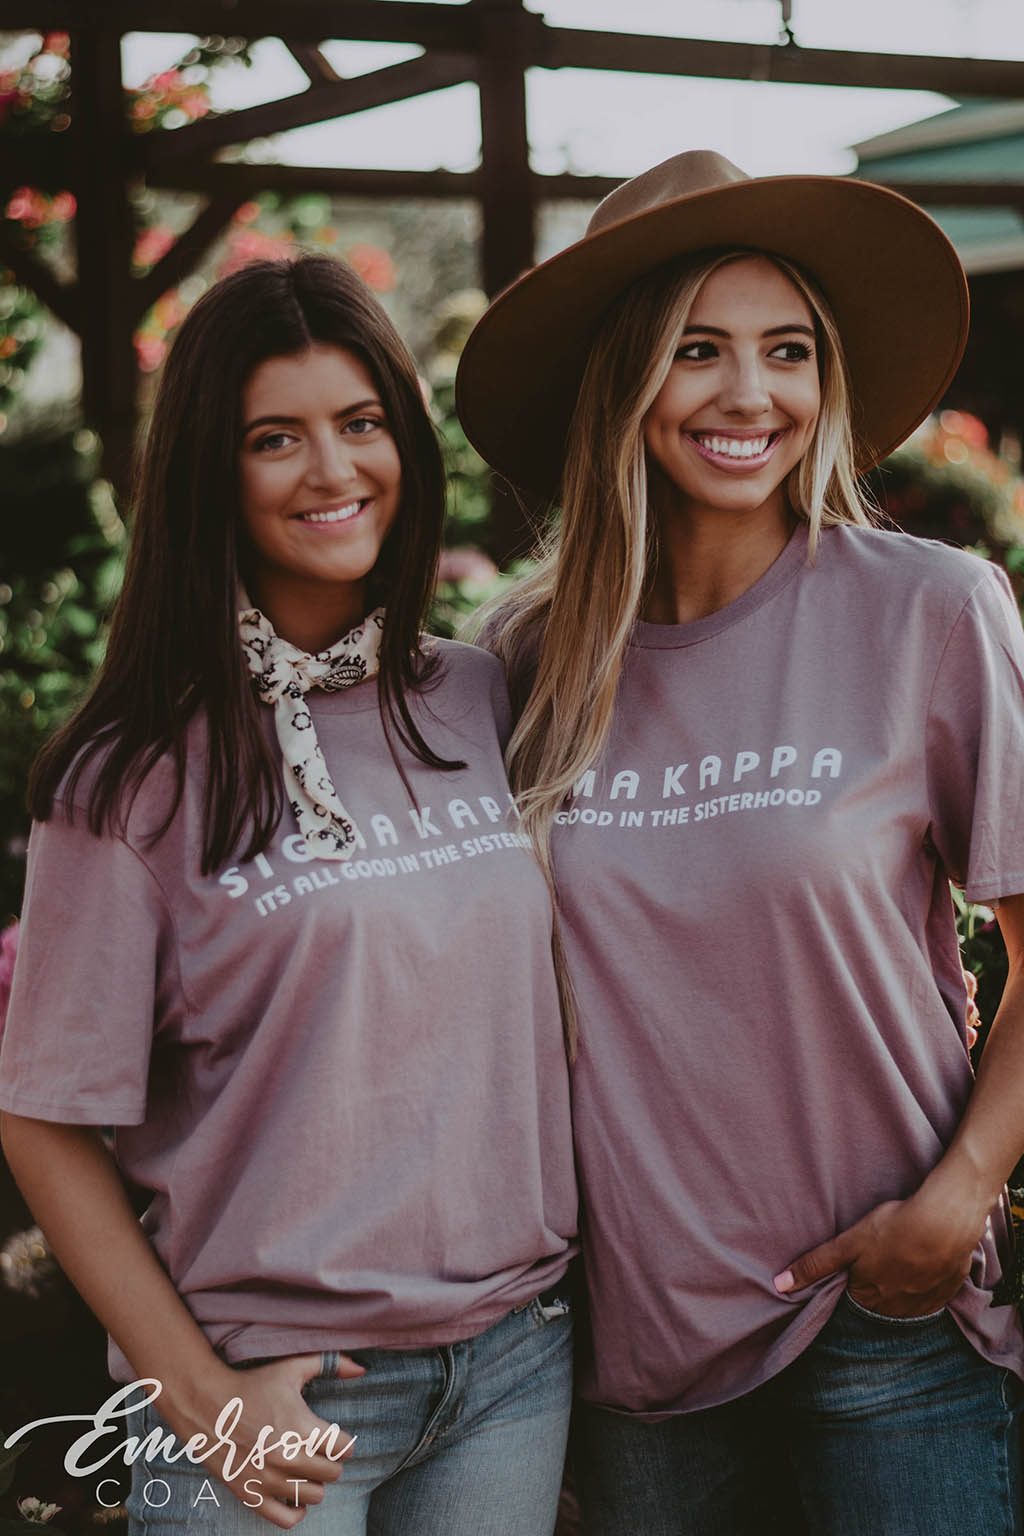 Sigma Kappa Good In The Sisterhood Tshirt